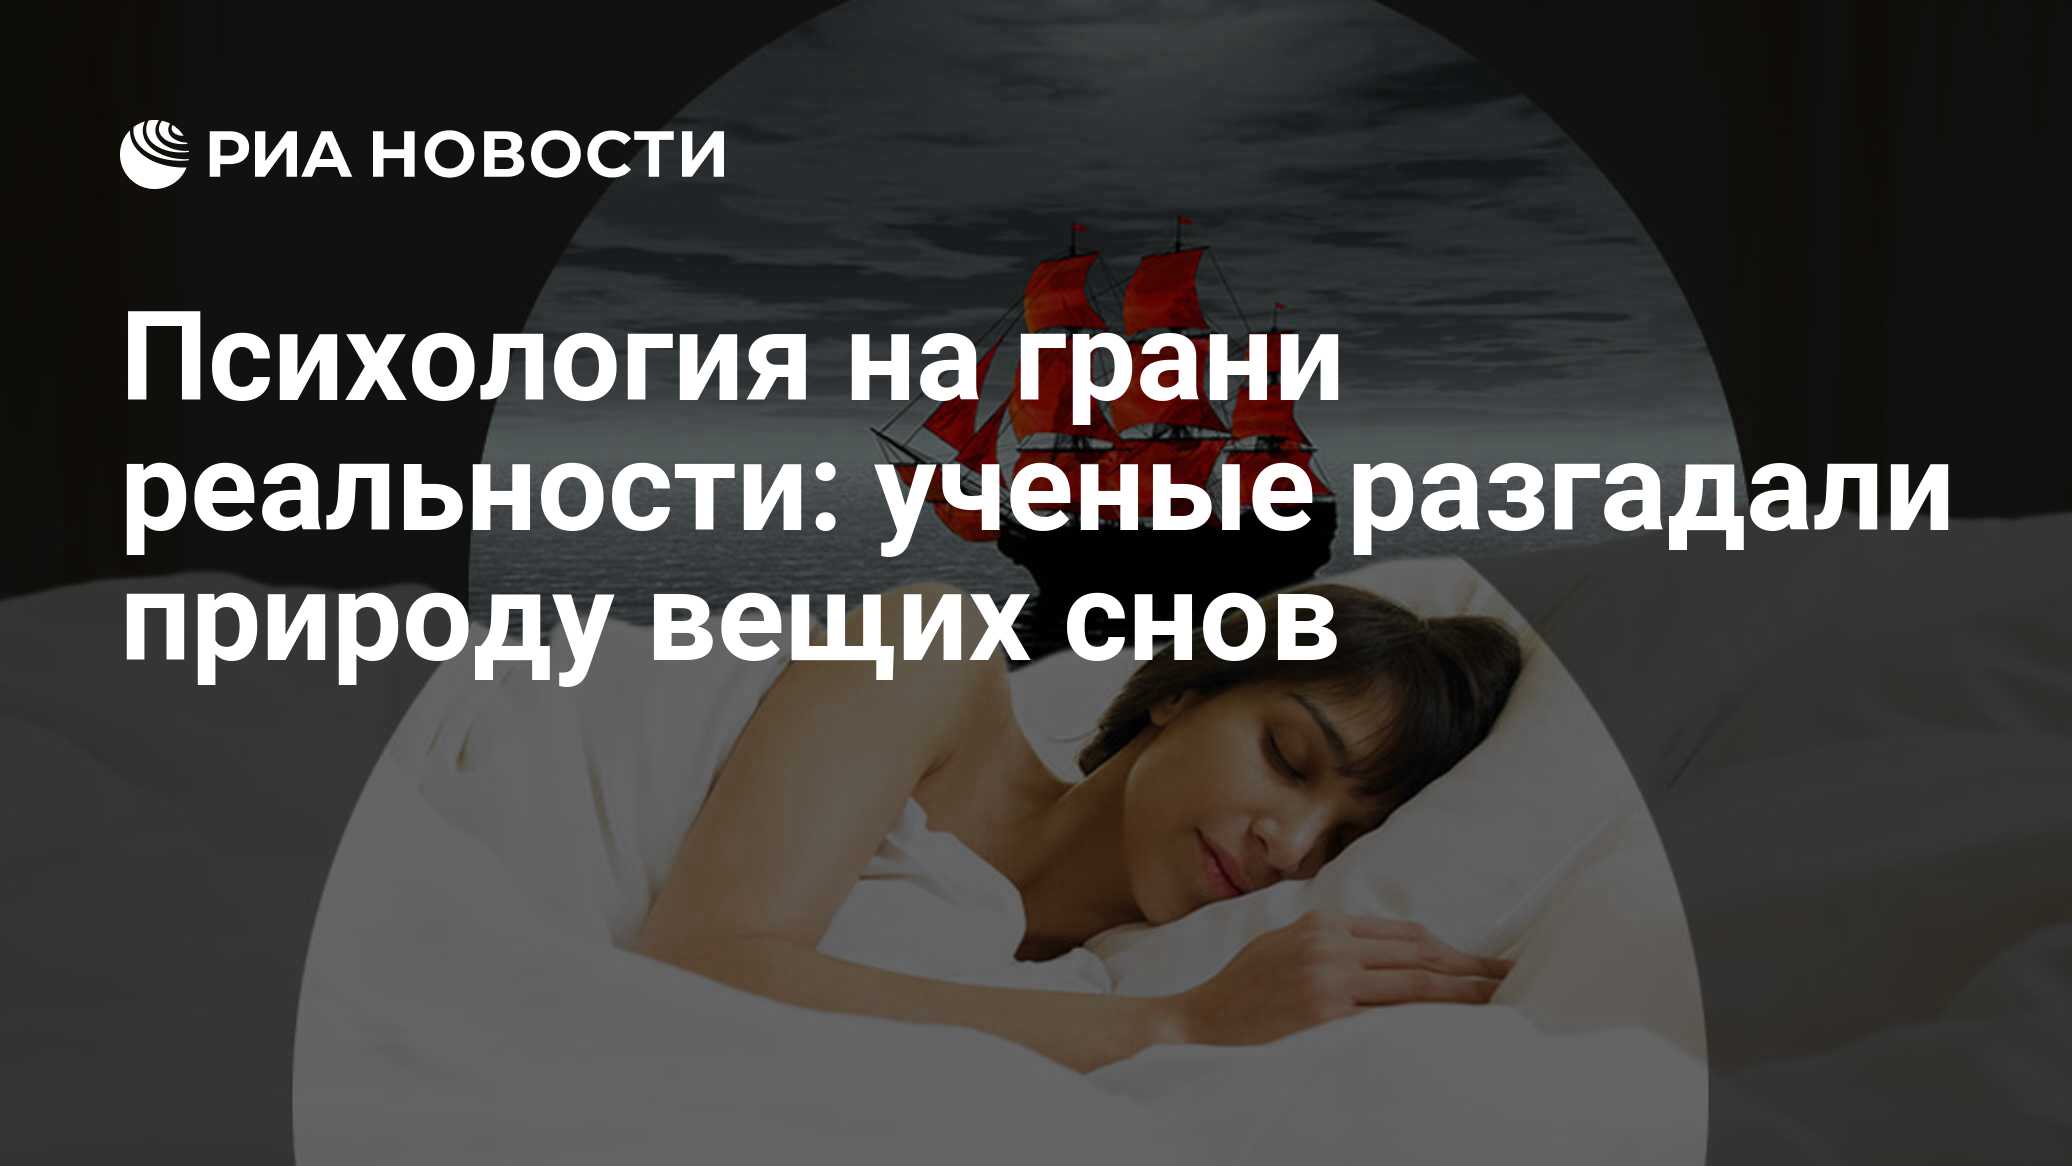 Можно что-то сделать, чтобы сон не сбылся? - 22 ответа на форуме irhidey.ru ()